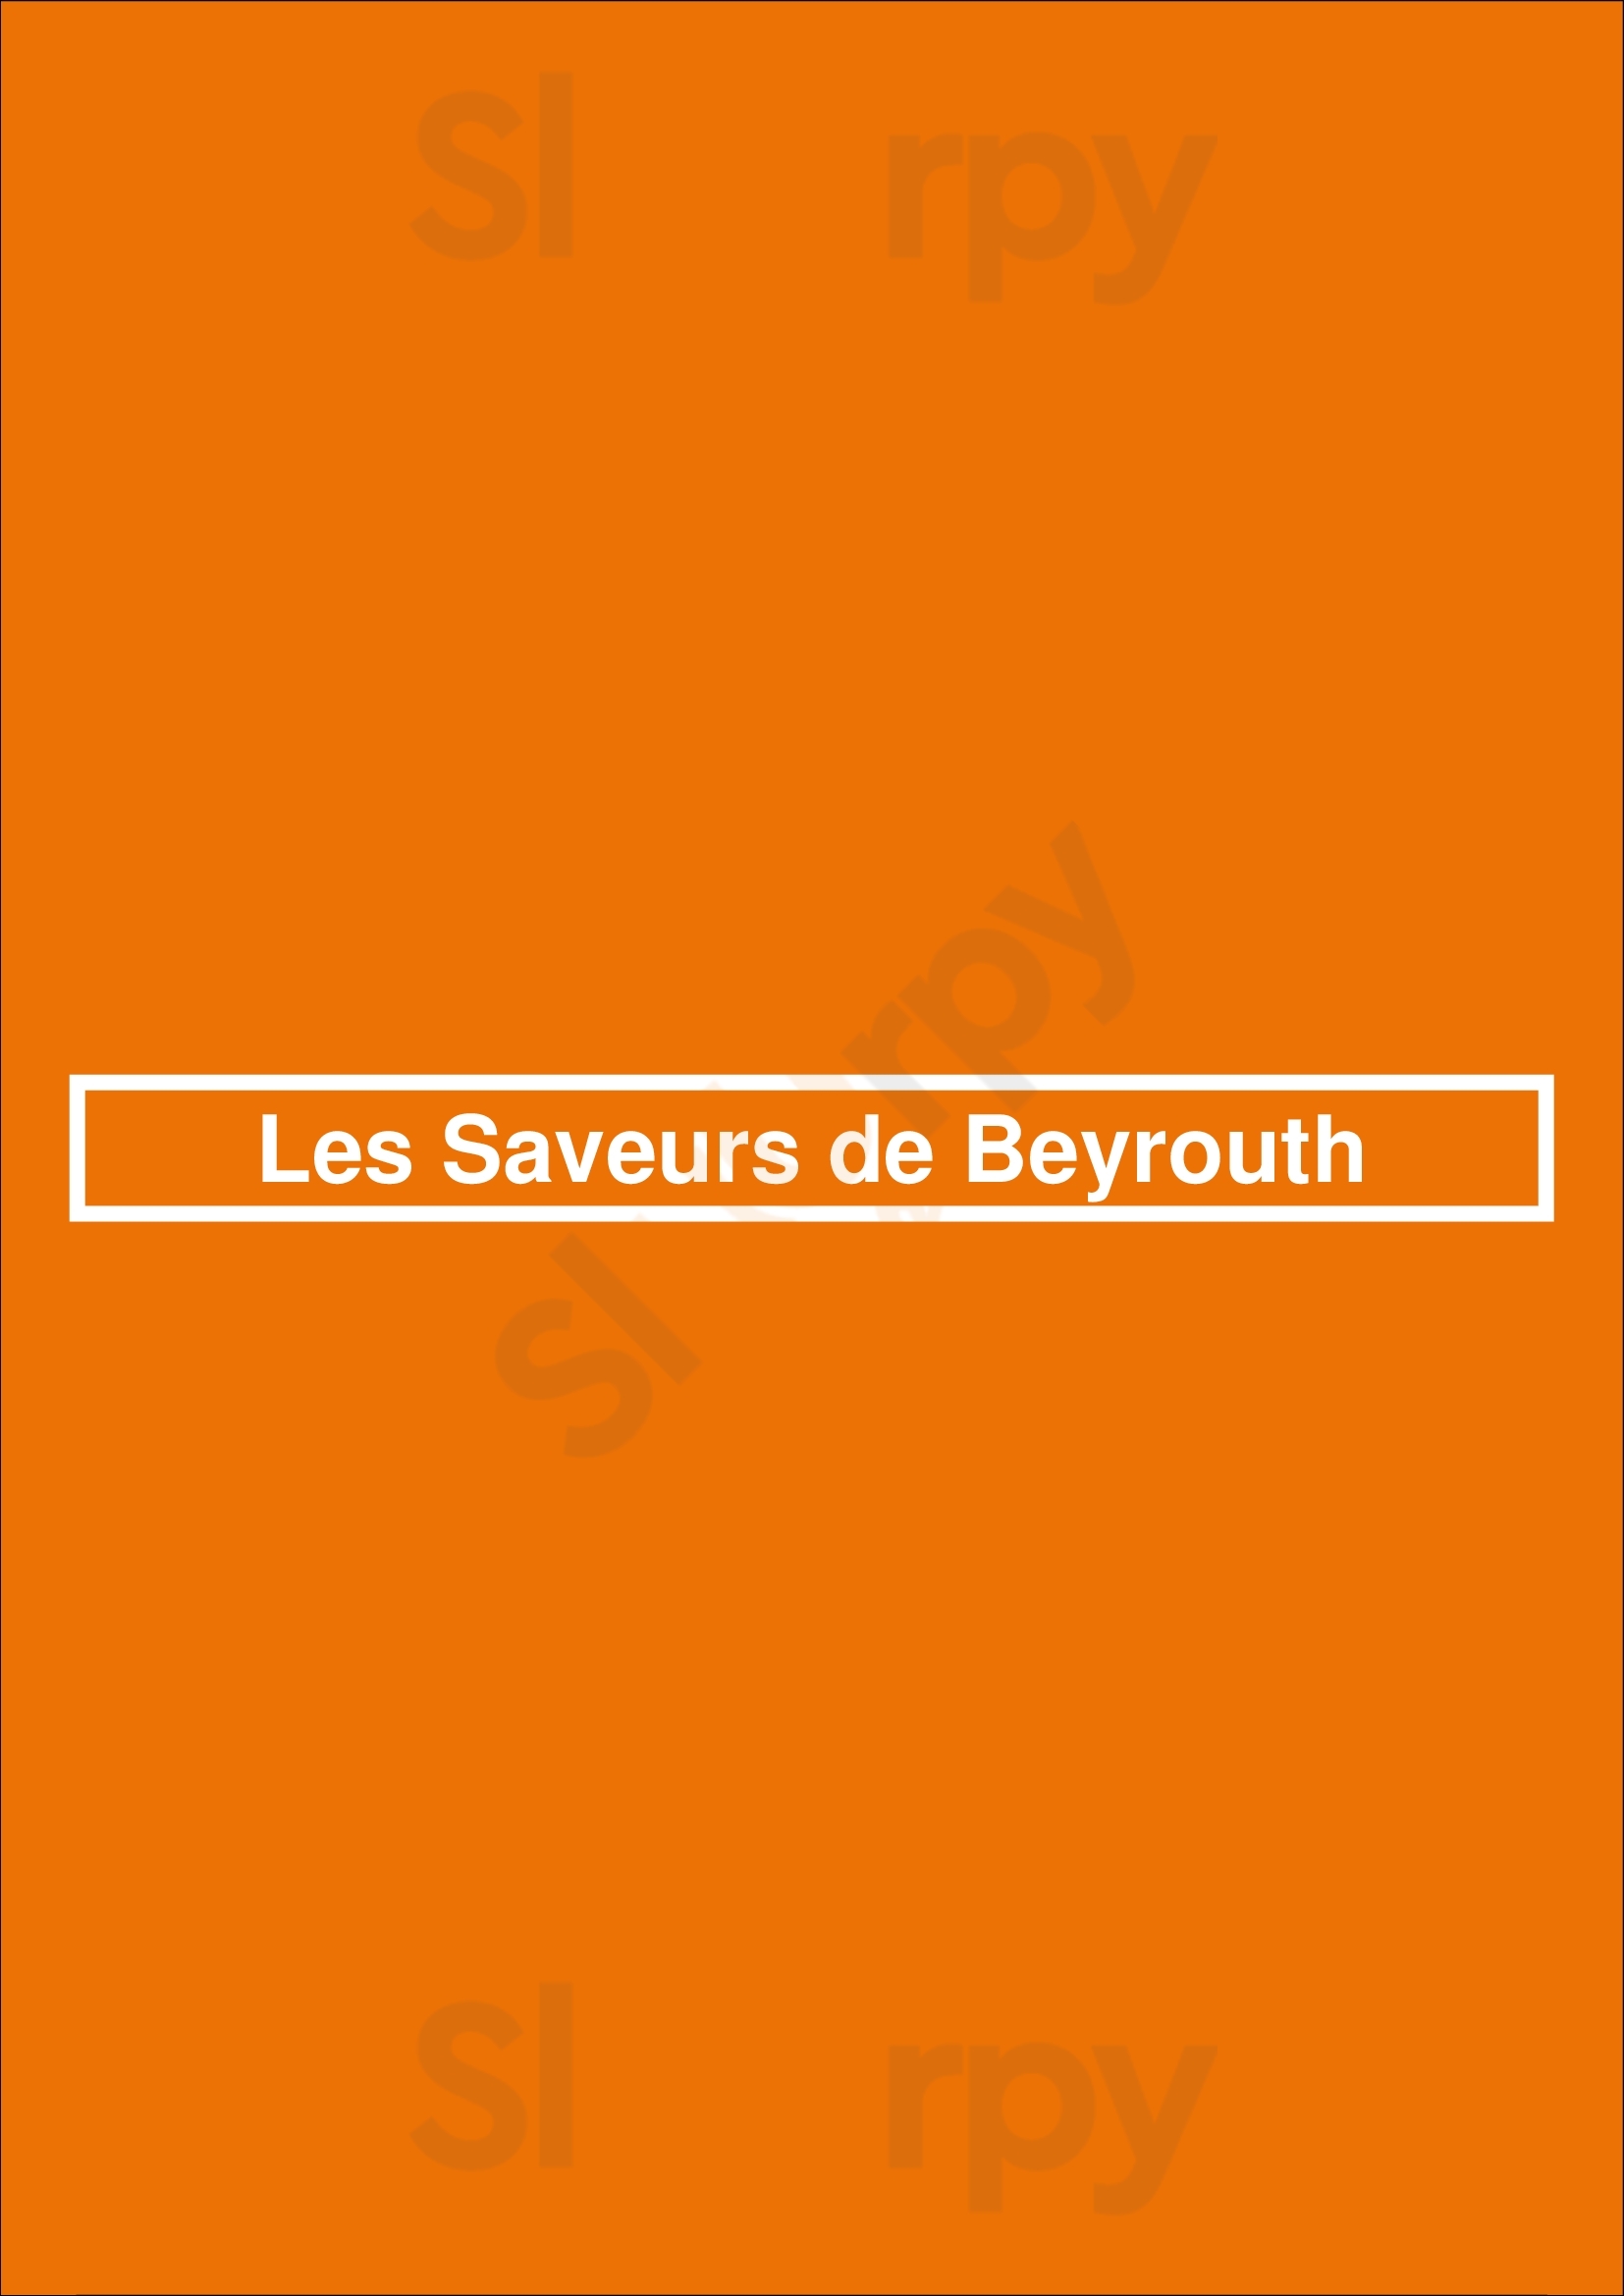 Les Saveurs De Beyrouth Bruxelles Menu - 1